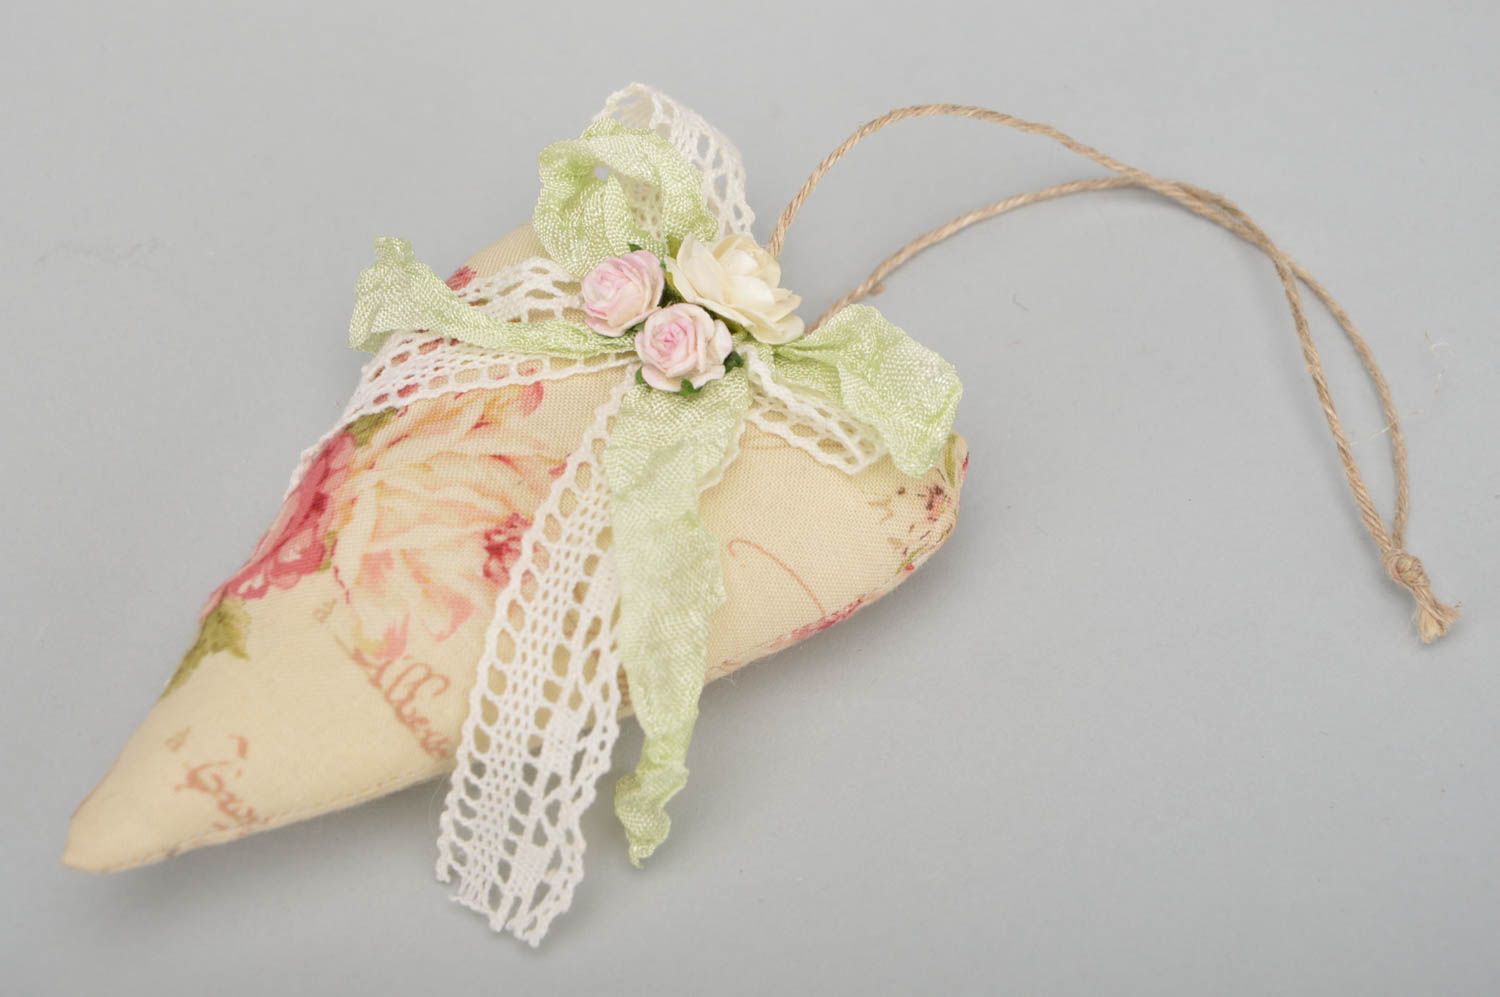 Интерьерная подвеска сердце с цветами с запахом ванили тектсильное ручной работы фото 2